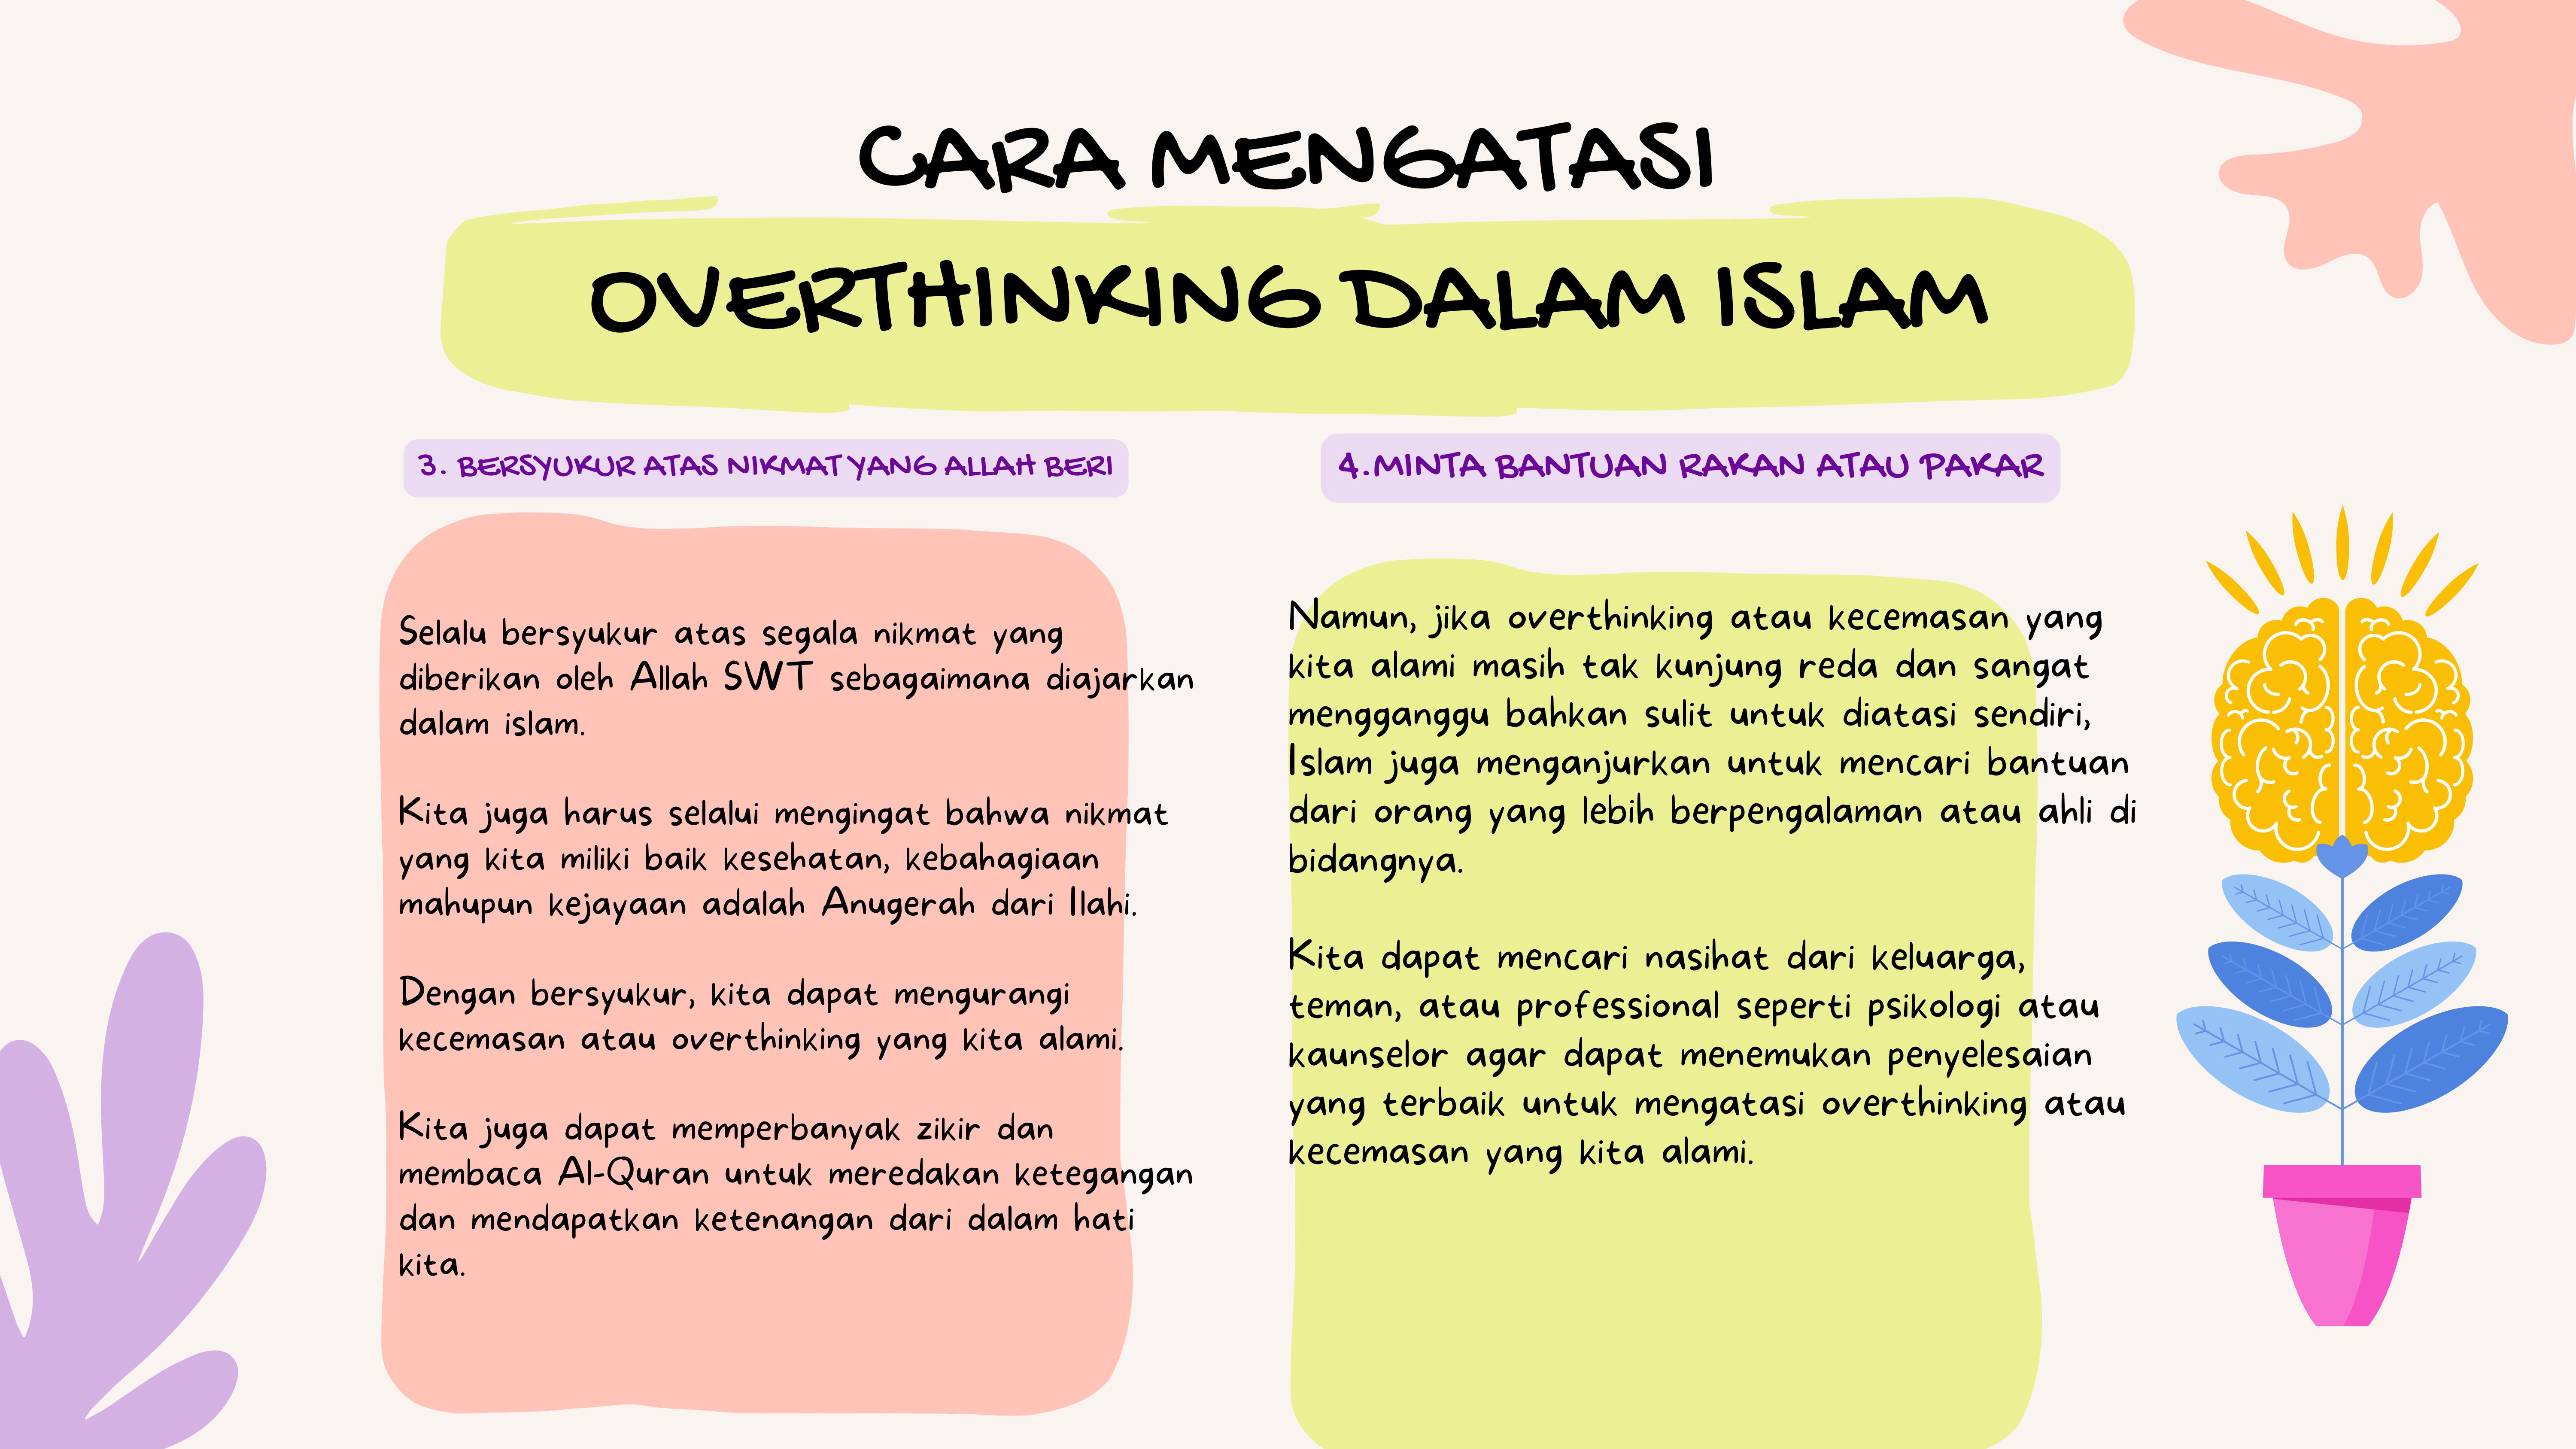 CARA MENGATASI OVERTHINKING DALAM ISLAM 4